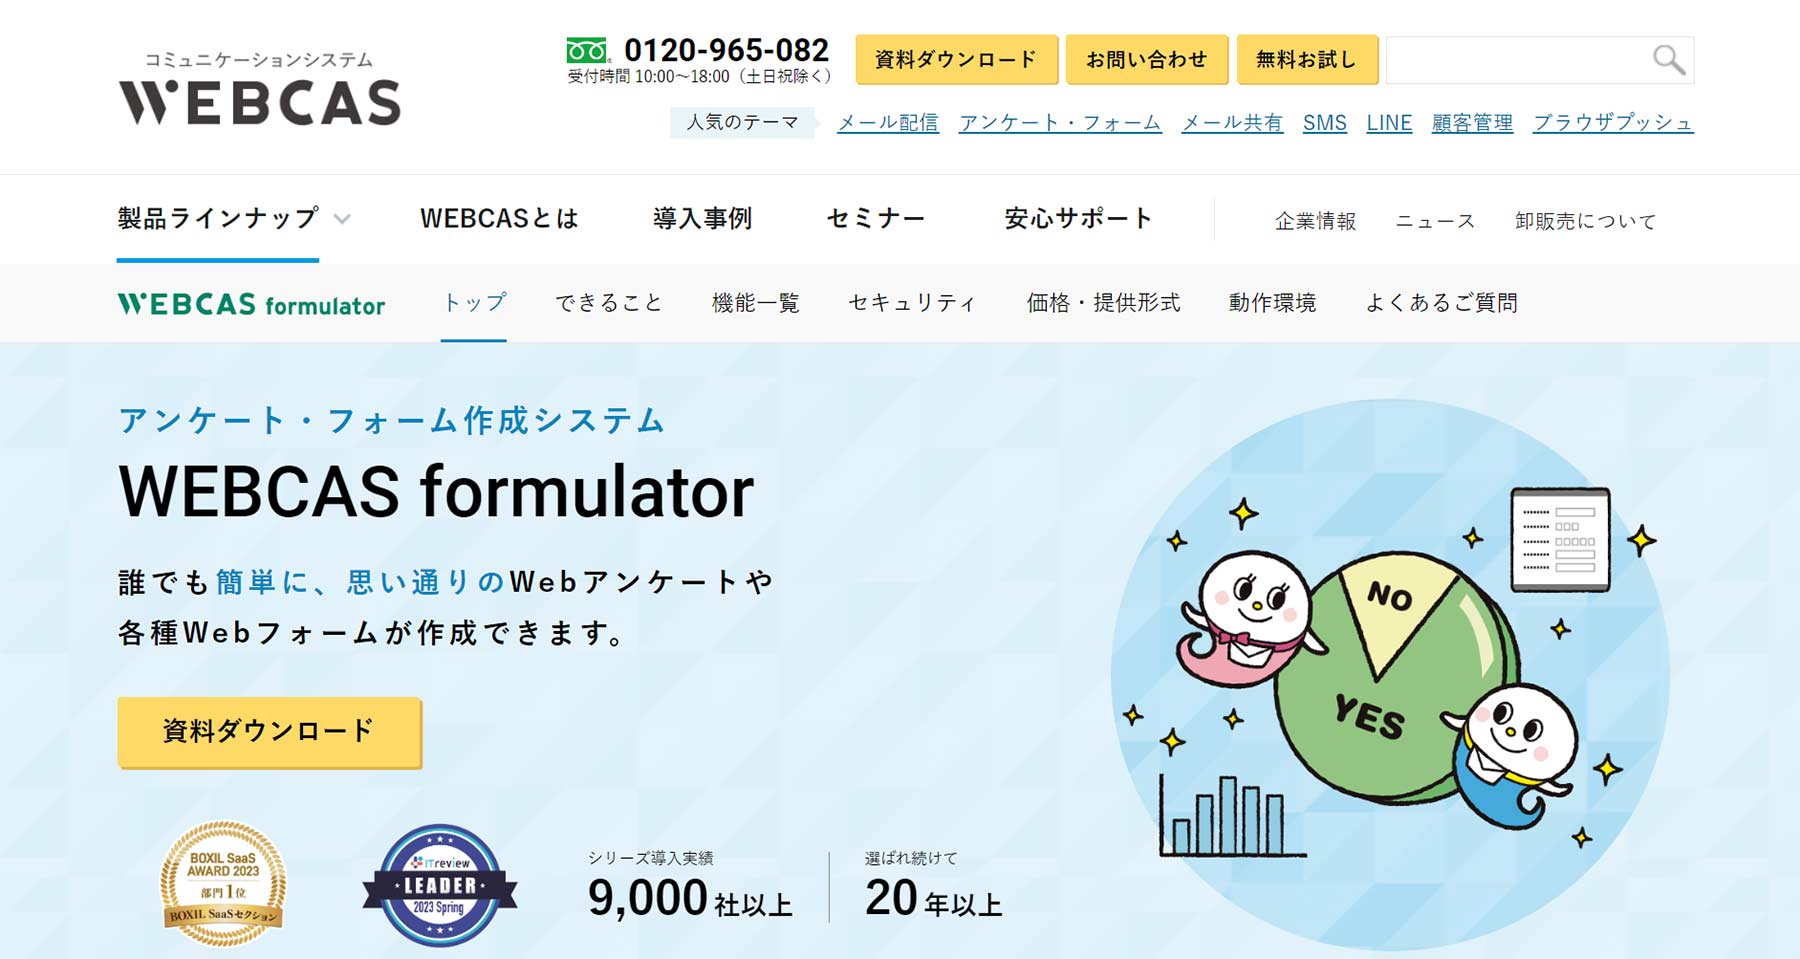 WEBCAS formulator公式Webサイト